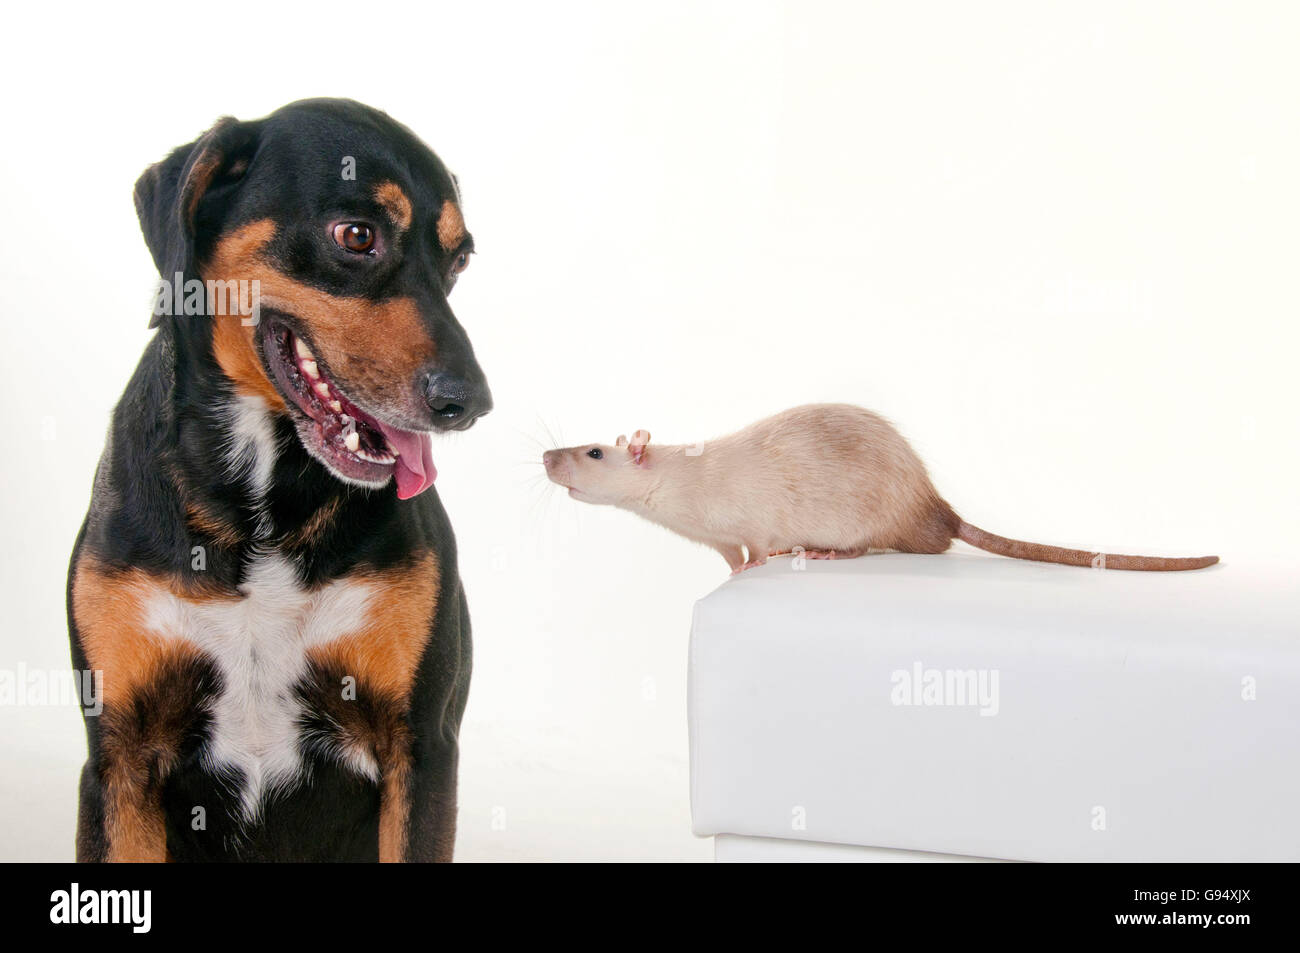 Razza del cane e del ratto domestico Foto Stock